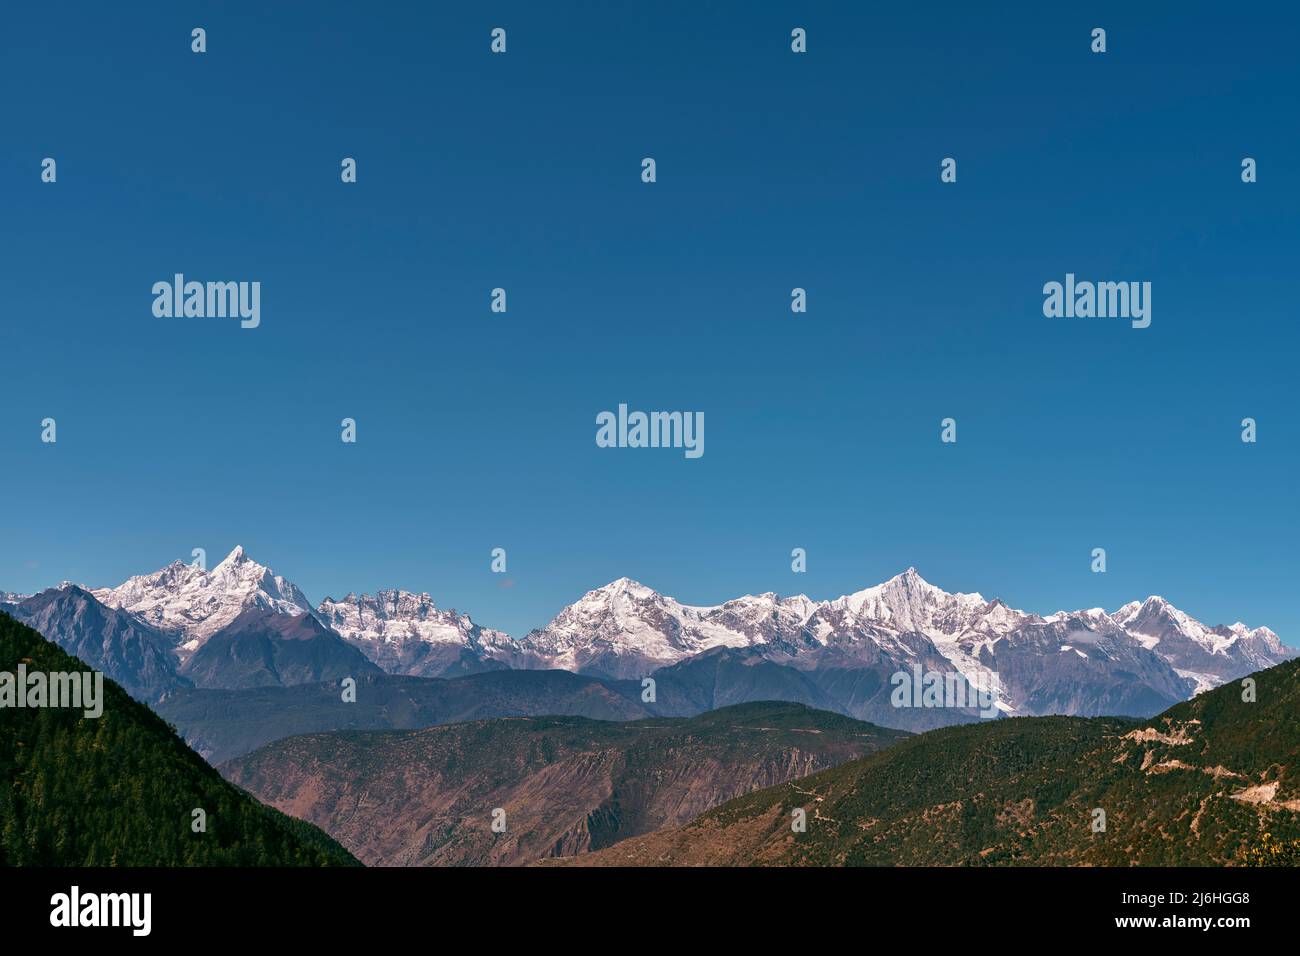 la catena montuosa dei meili innevati sotto il cielo blu nella provincia cinese del sichuan Foto Stock